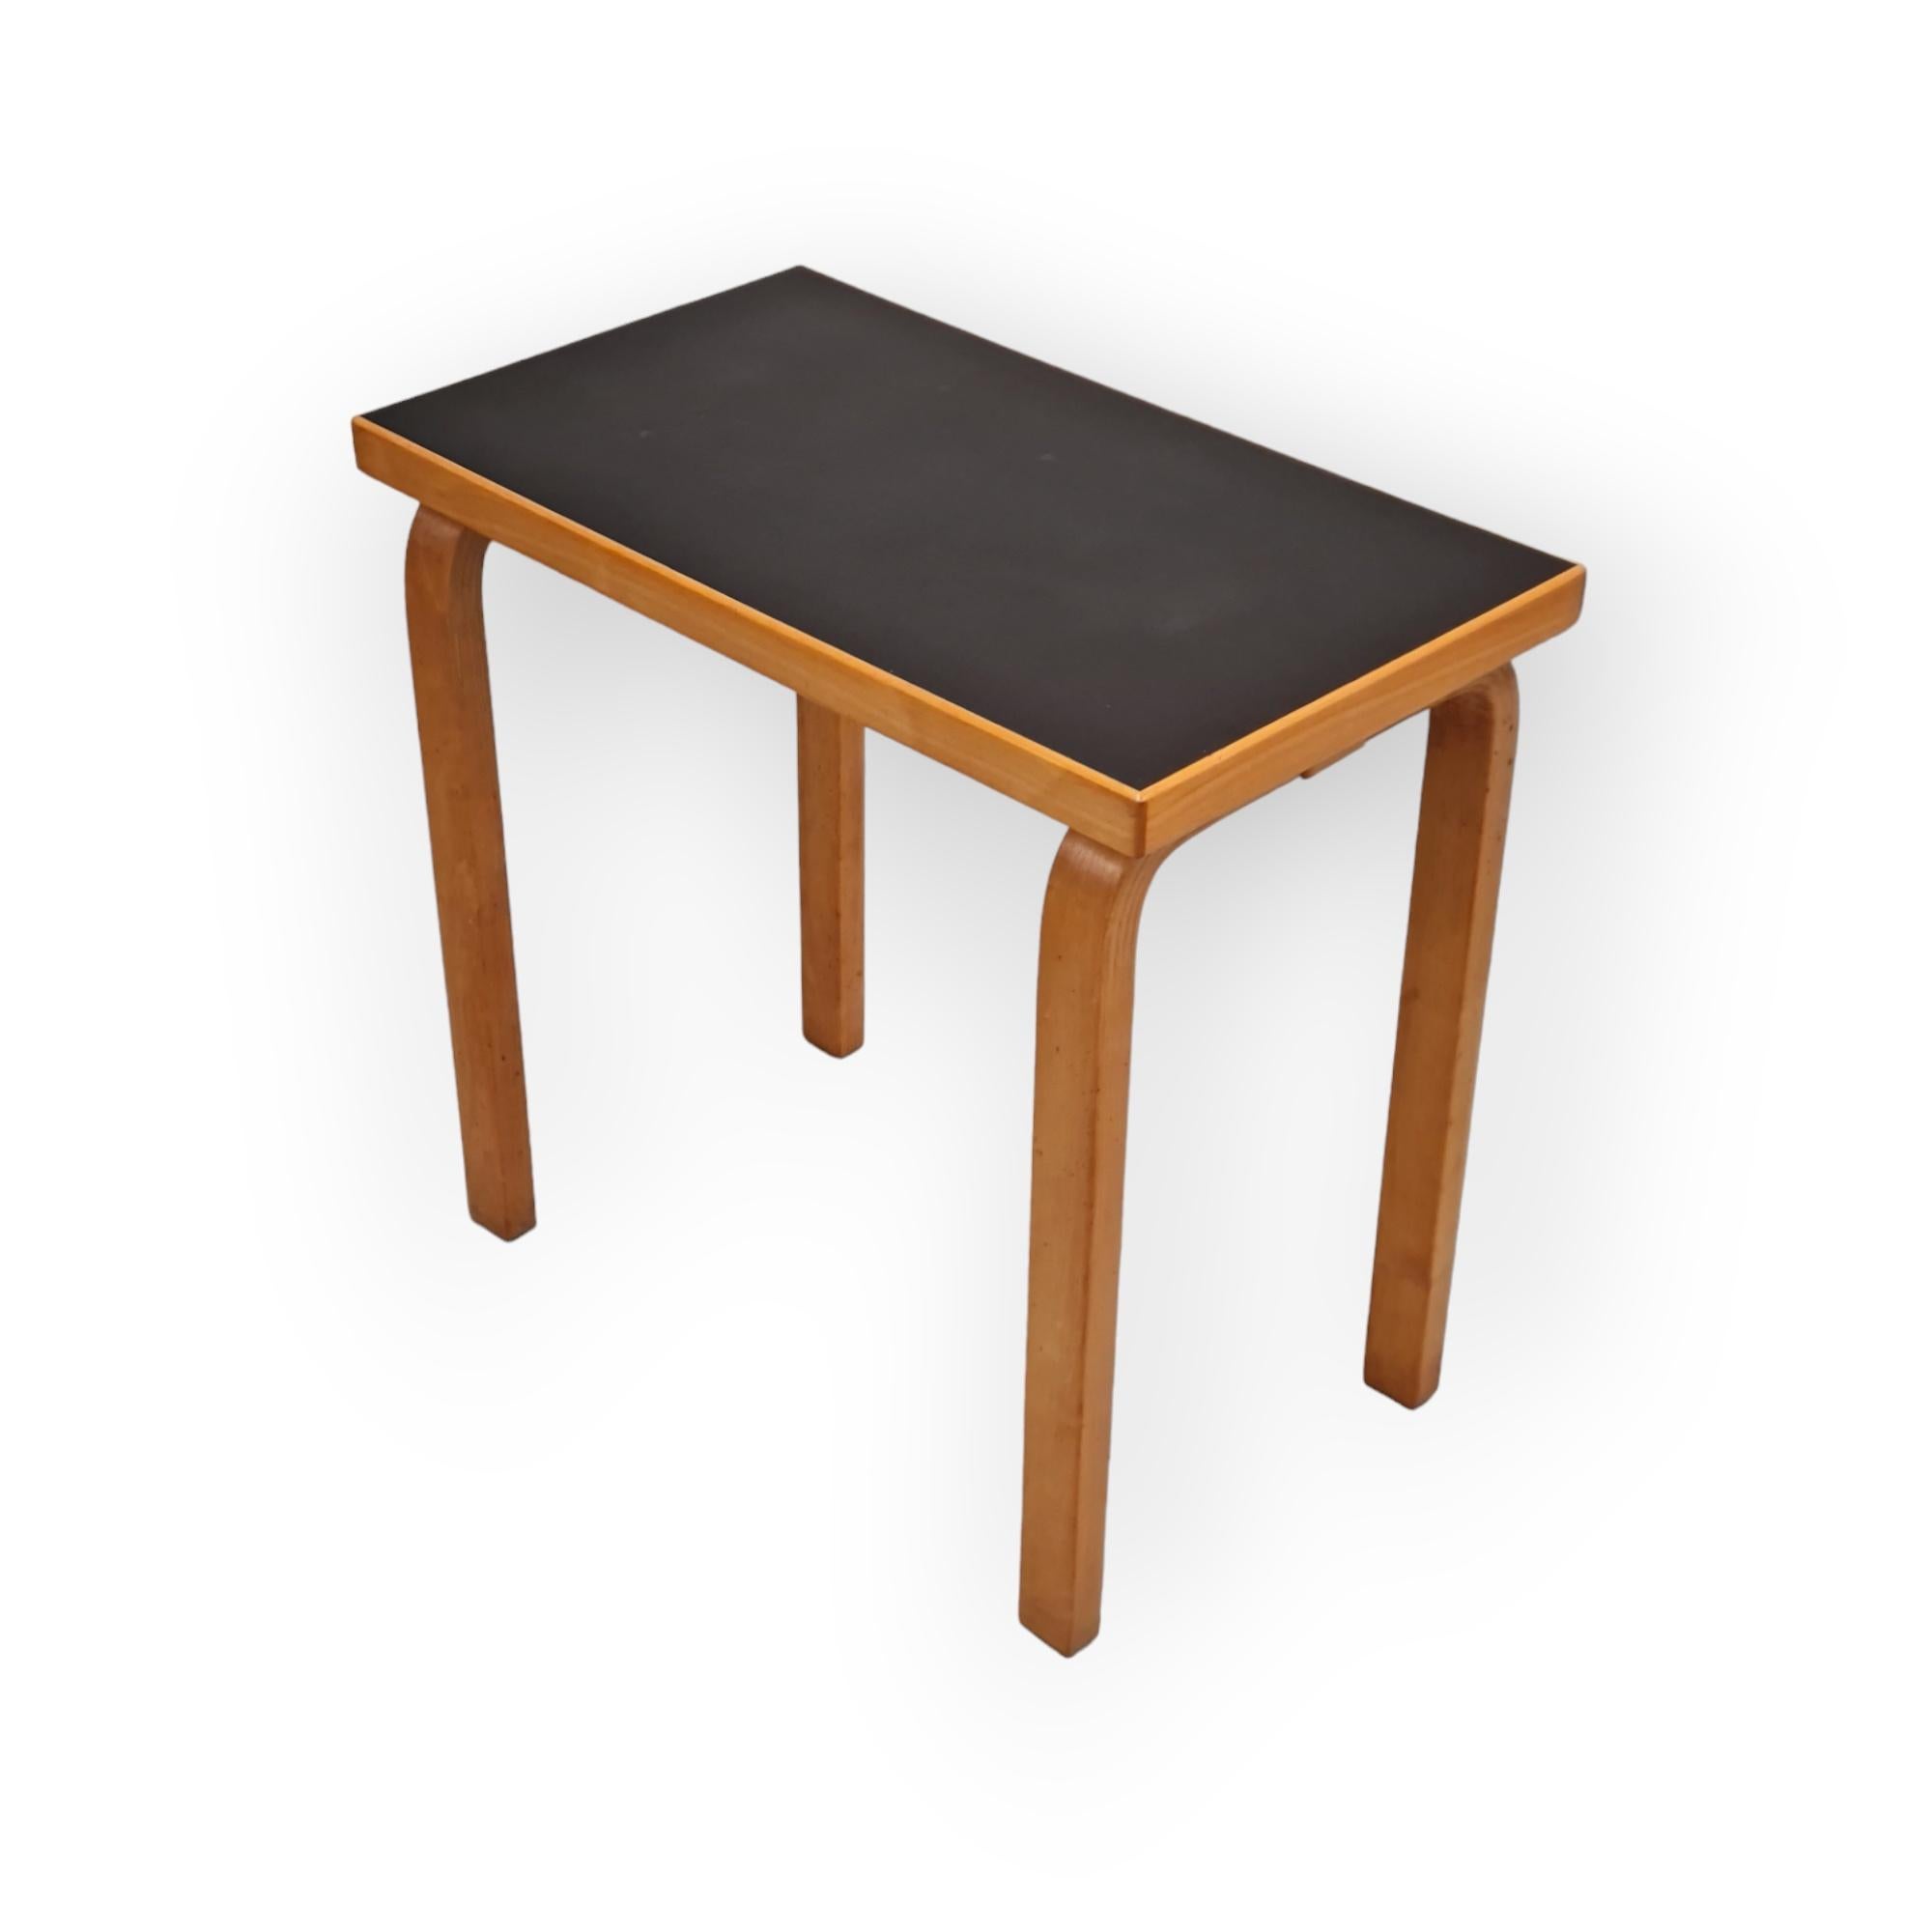 Alvar aalto Side Table Model 86 for Artek, 1930s For Sale 1